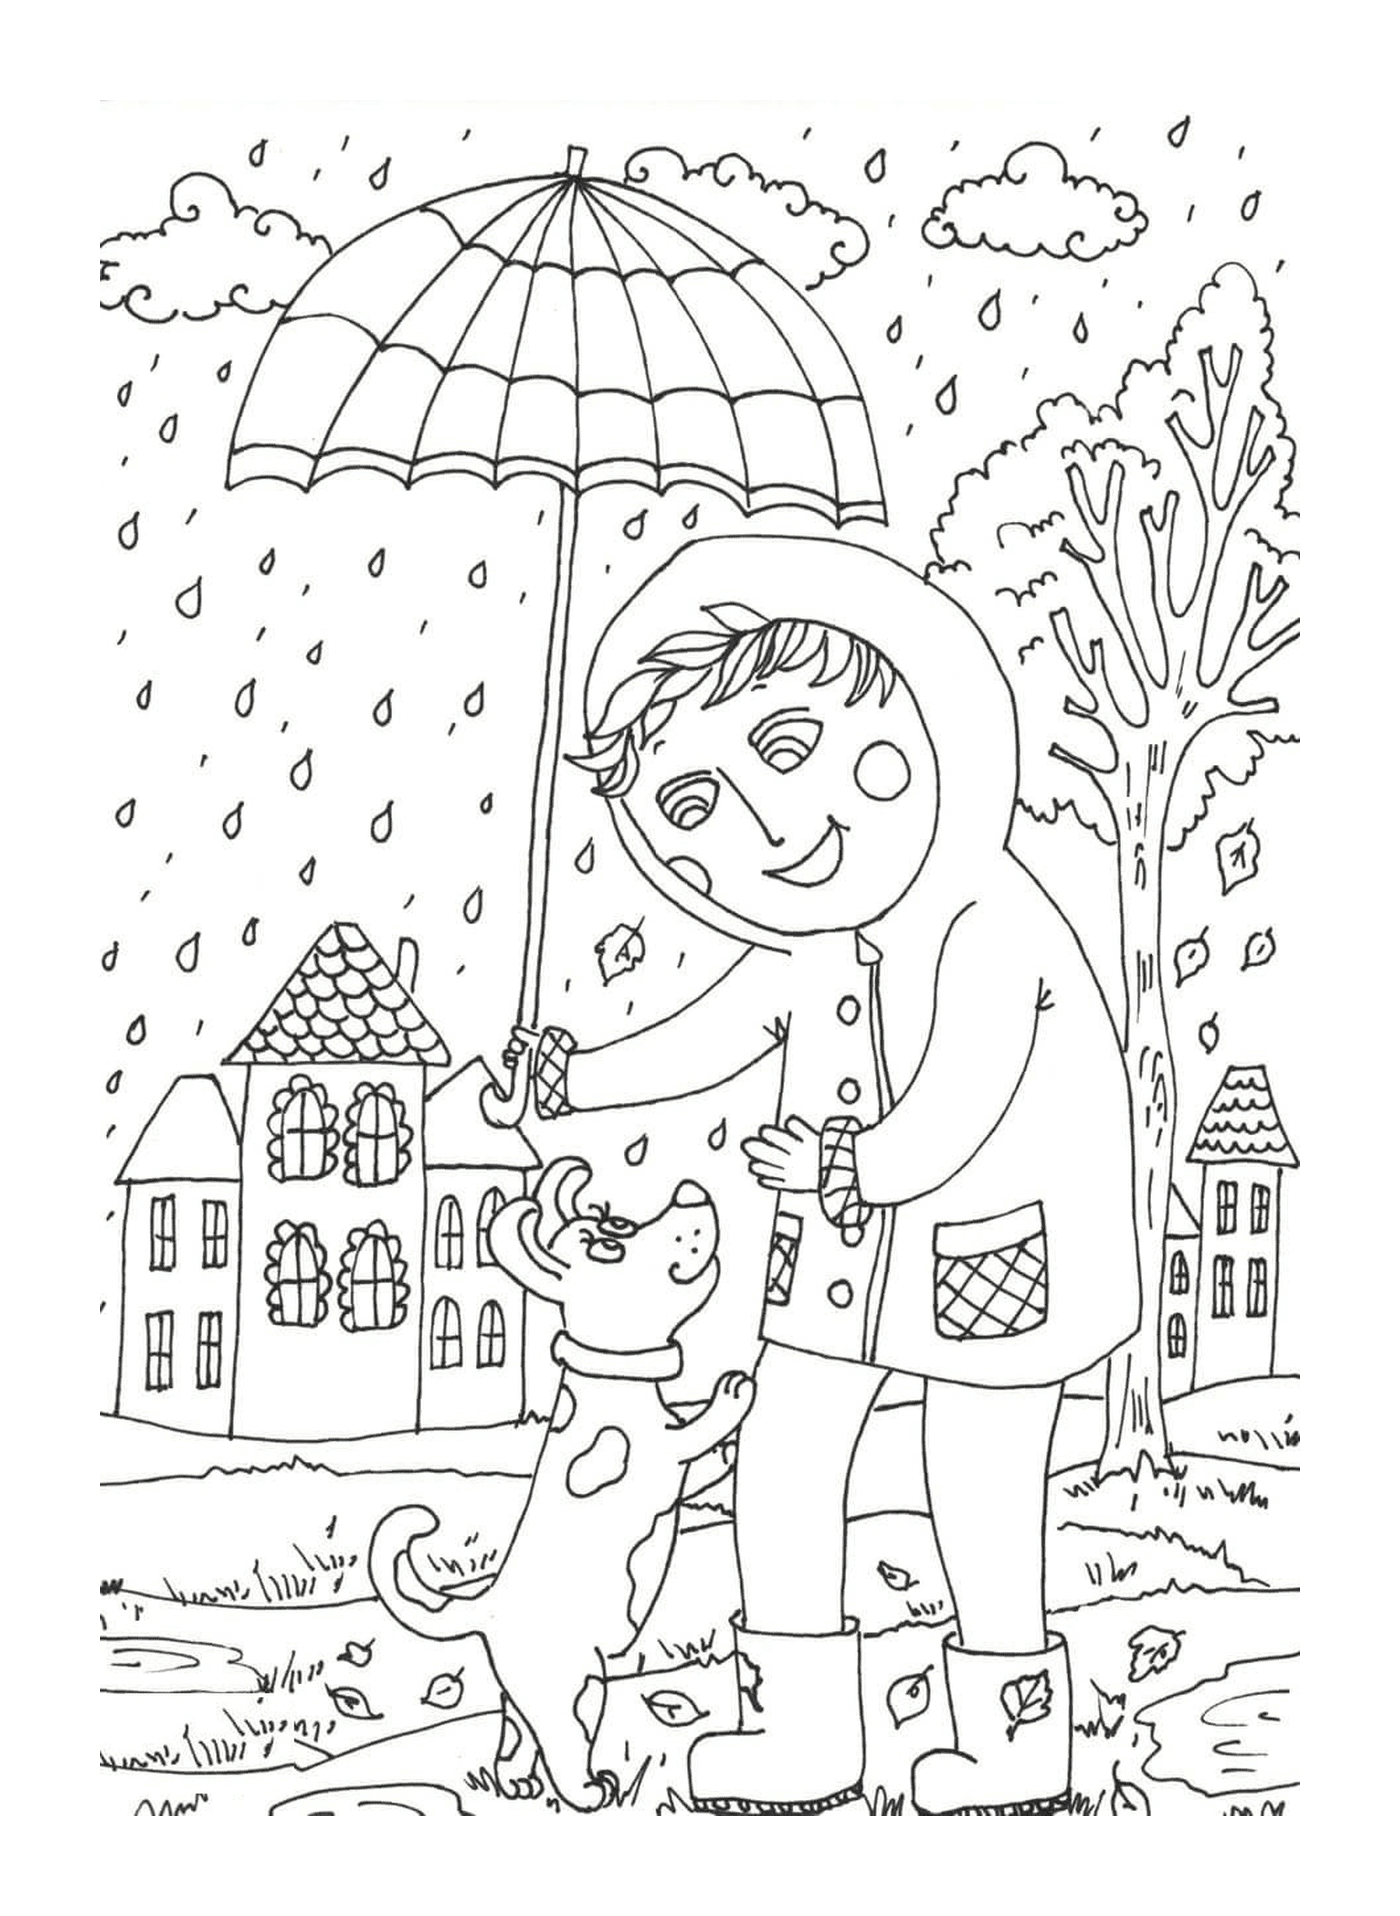  Uma criança segurando um guarda-chuva acima de um cão 